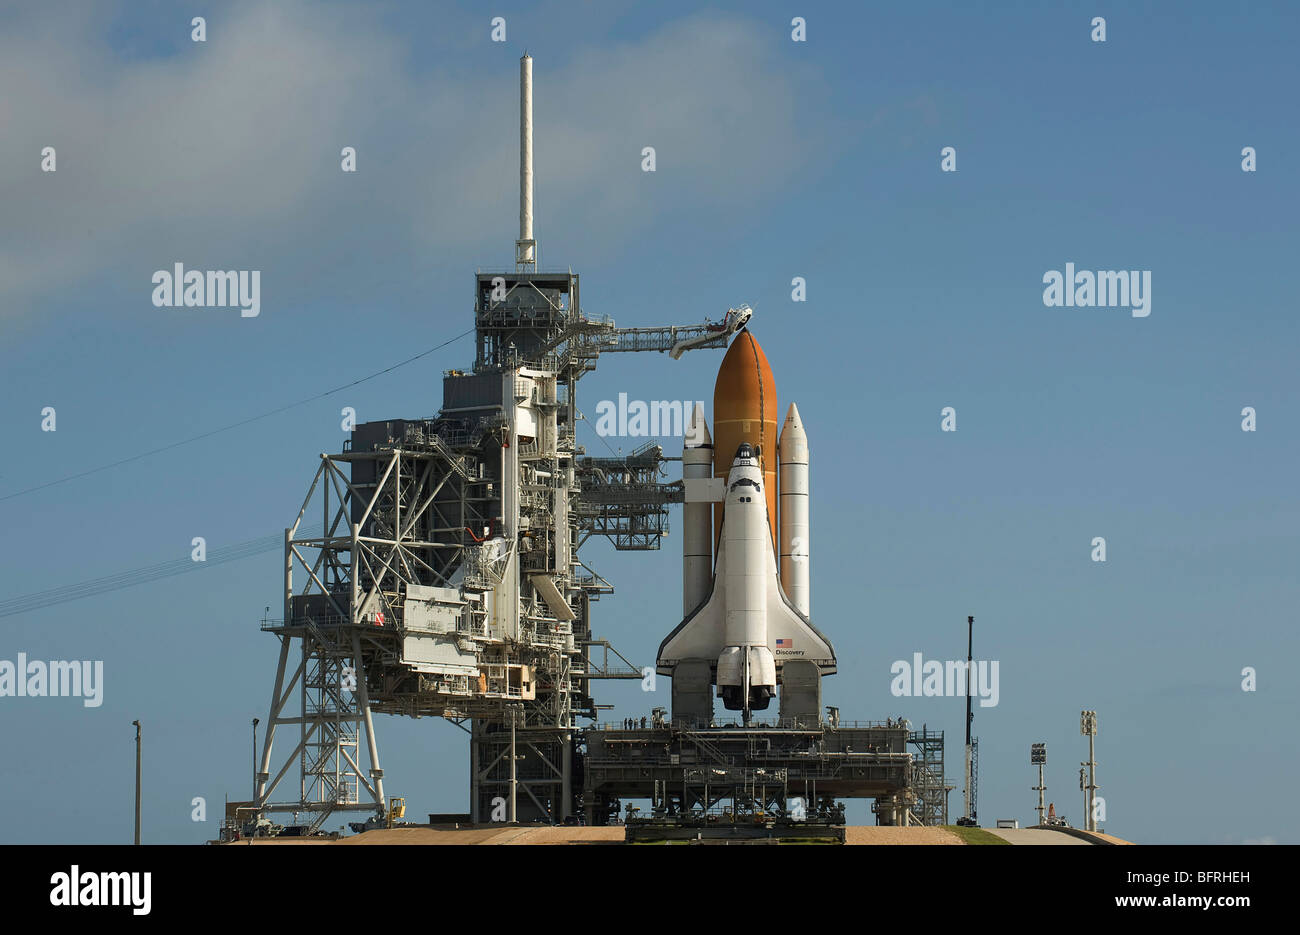 Transbordador Espacial Discovery está listo en la plataforma de lanzamiento en el Centro Espacial Kennedy. Foto de stock